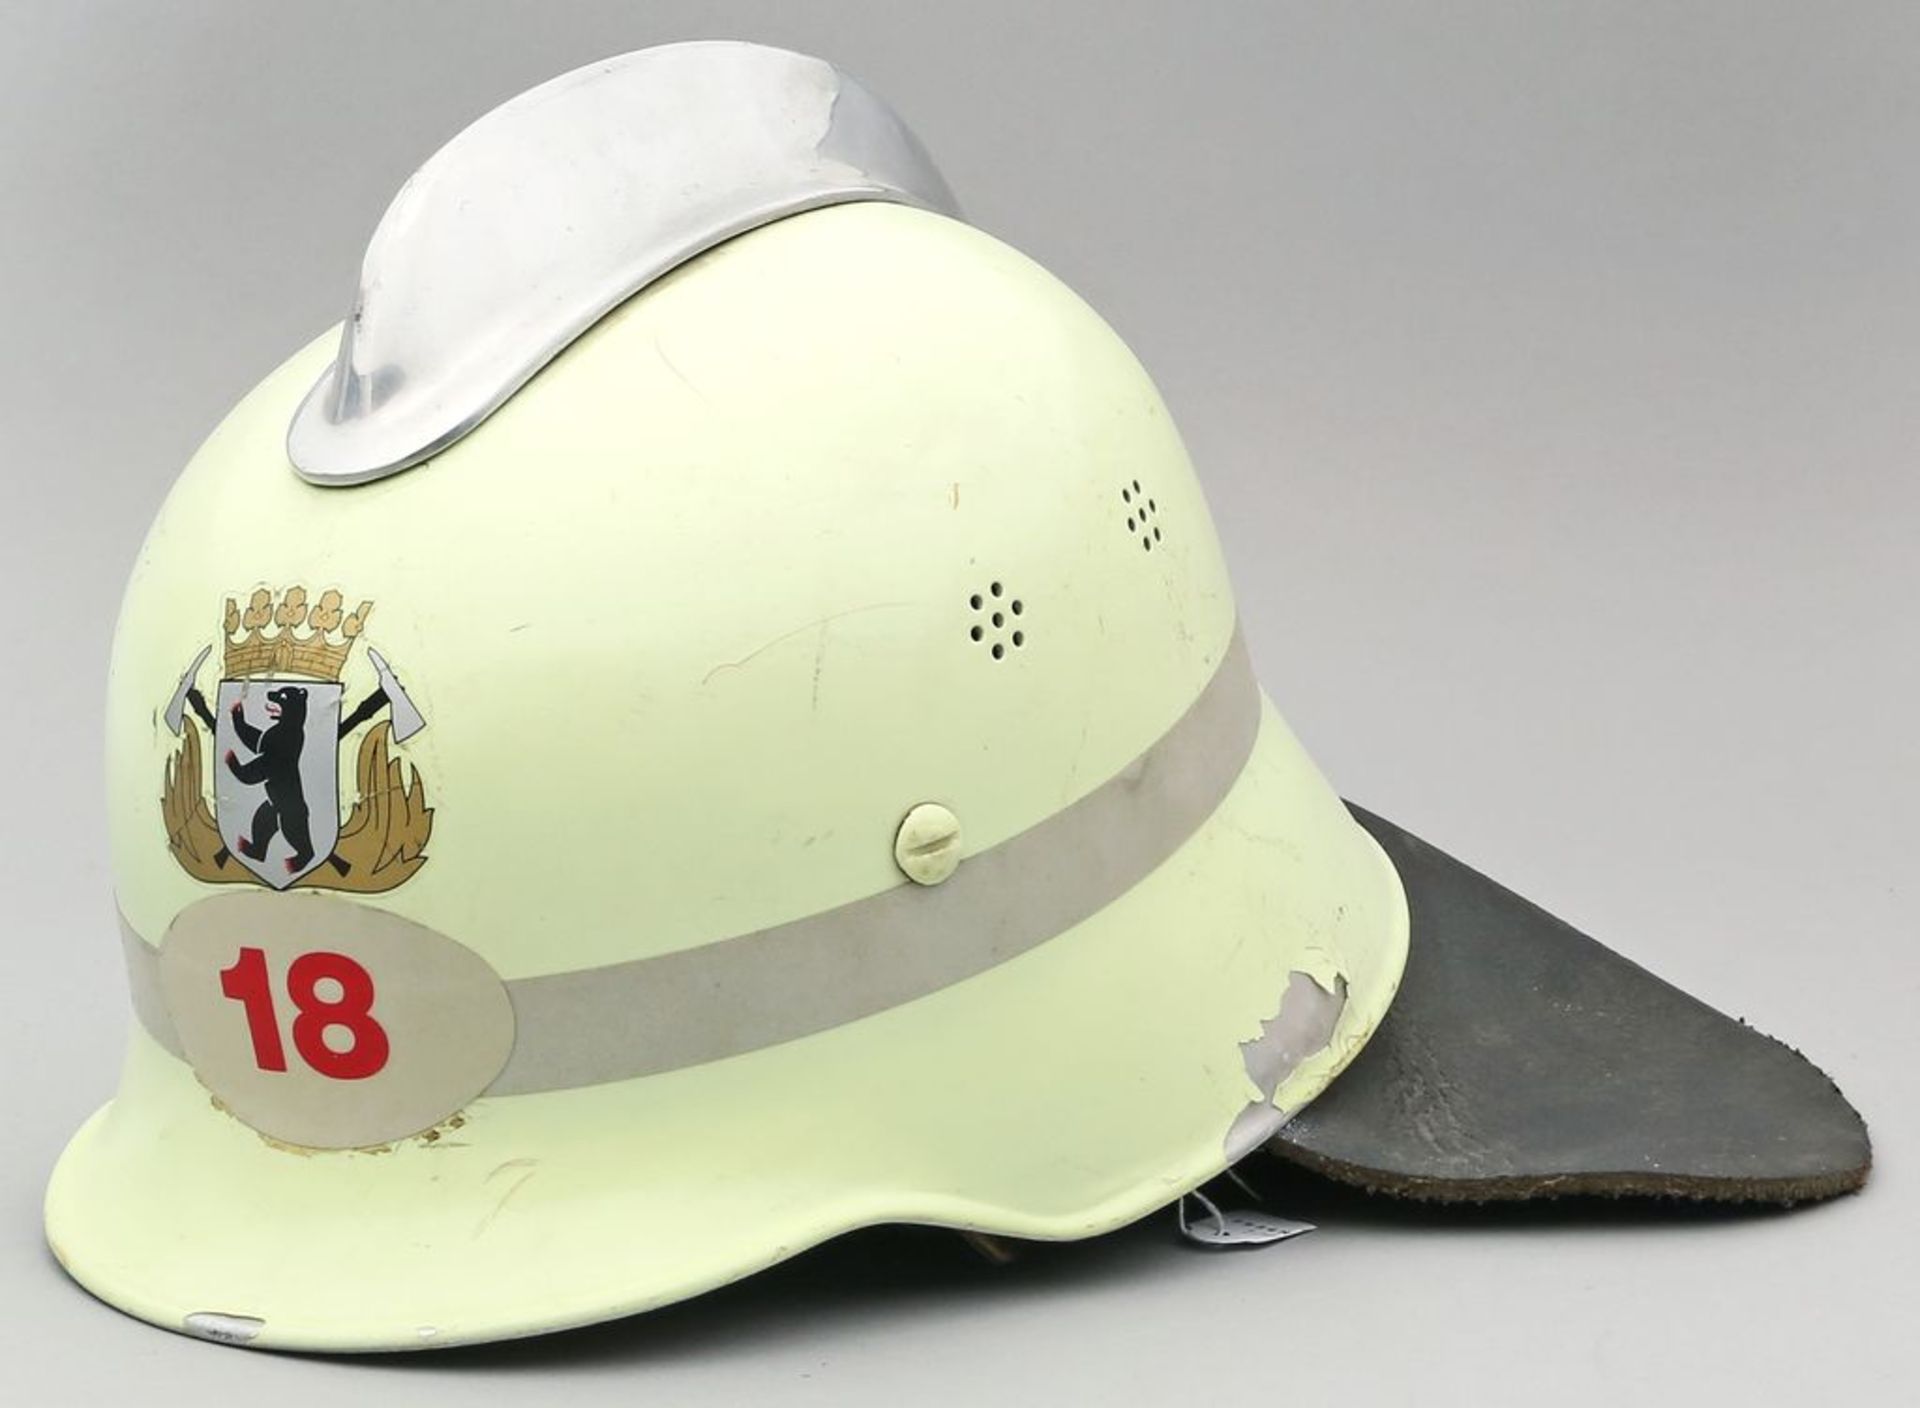 Helm der Berliner Feuerwehr. Gebrauchsspuren. Größe 56-61.